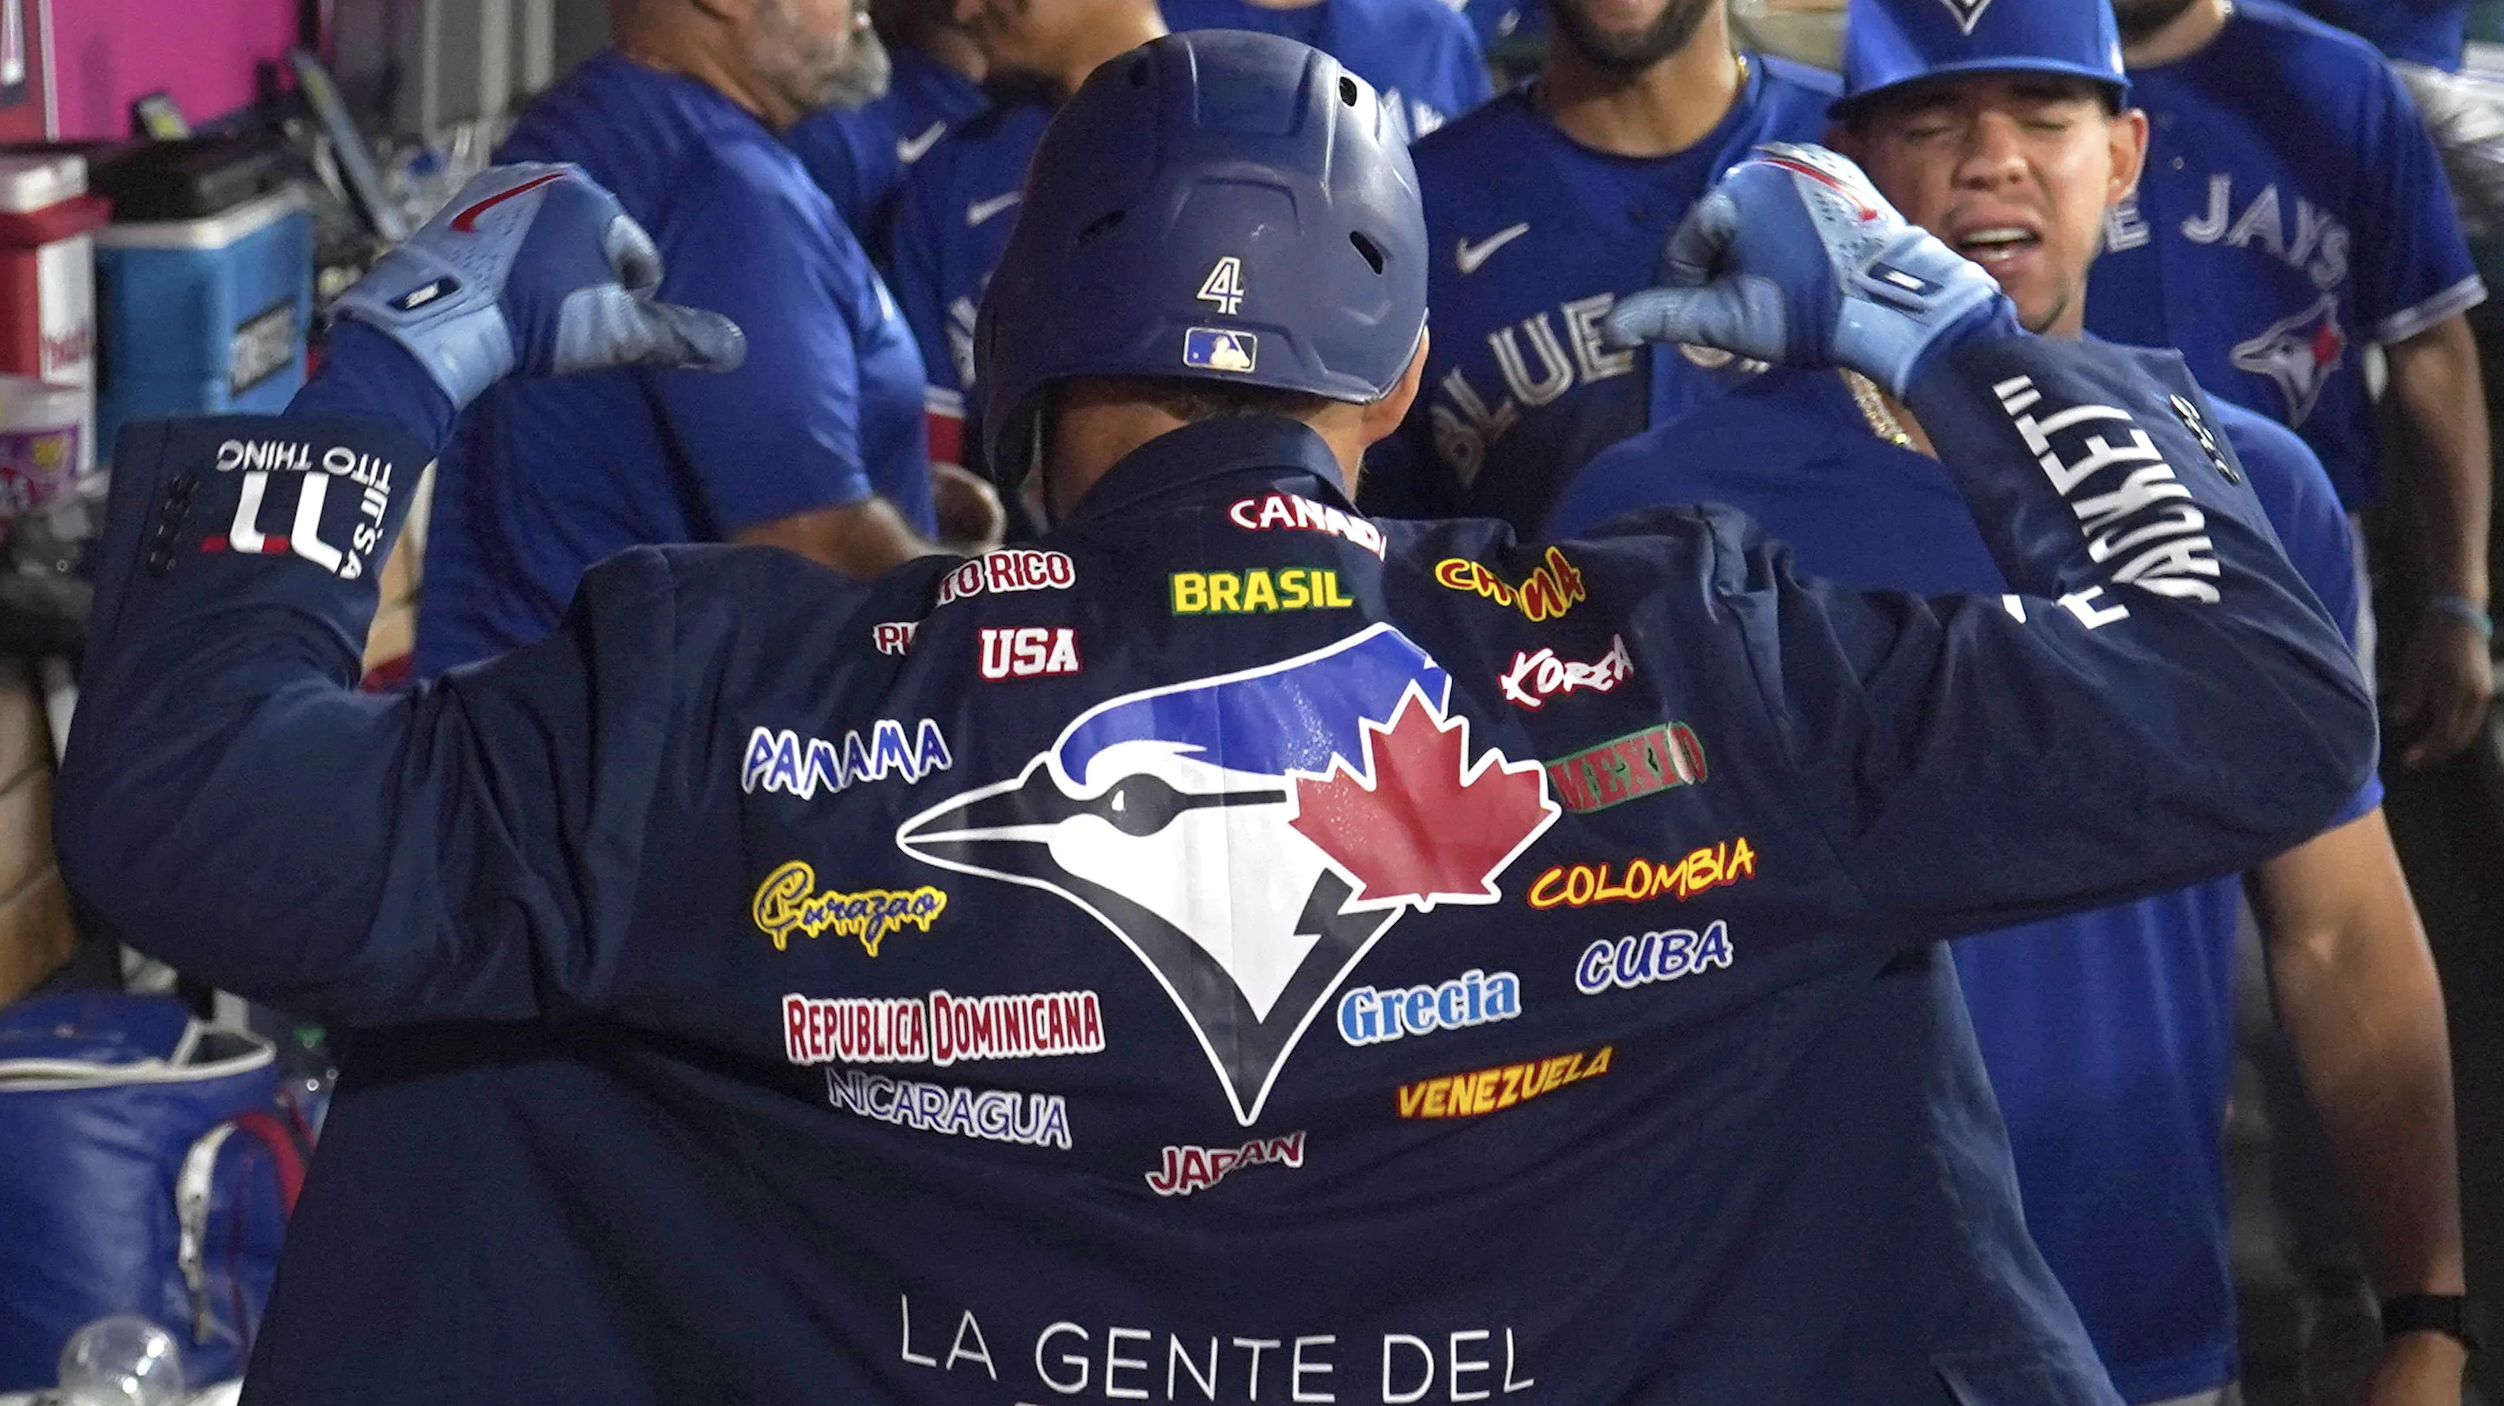 Home Run Jacket (Vladimir Guerrero Jr.) Toronto Blue Jays - Official